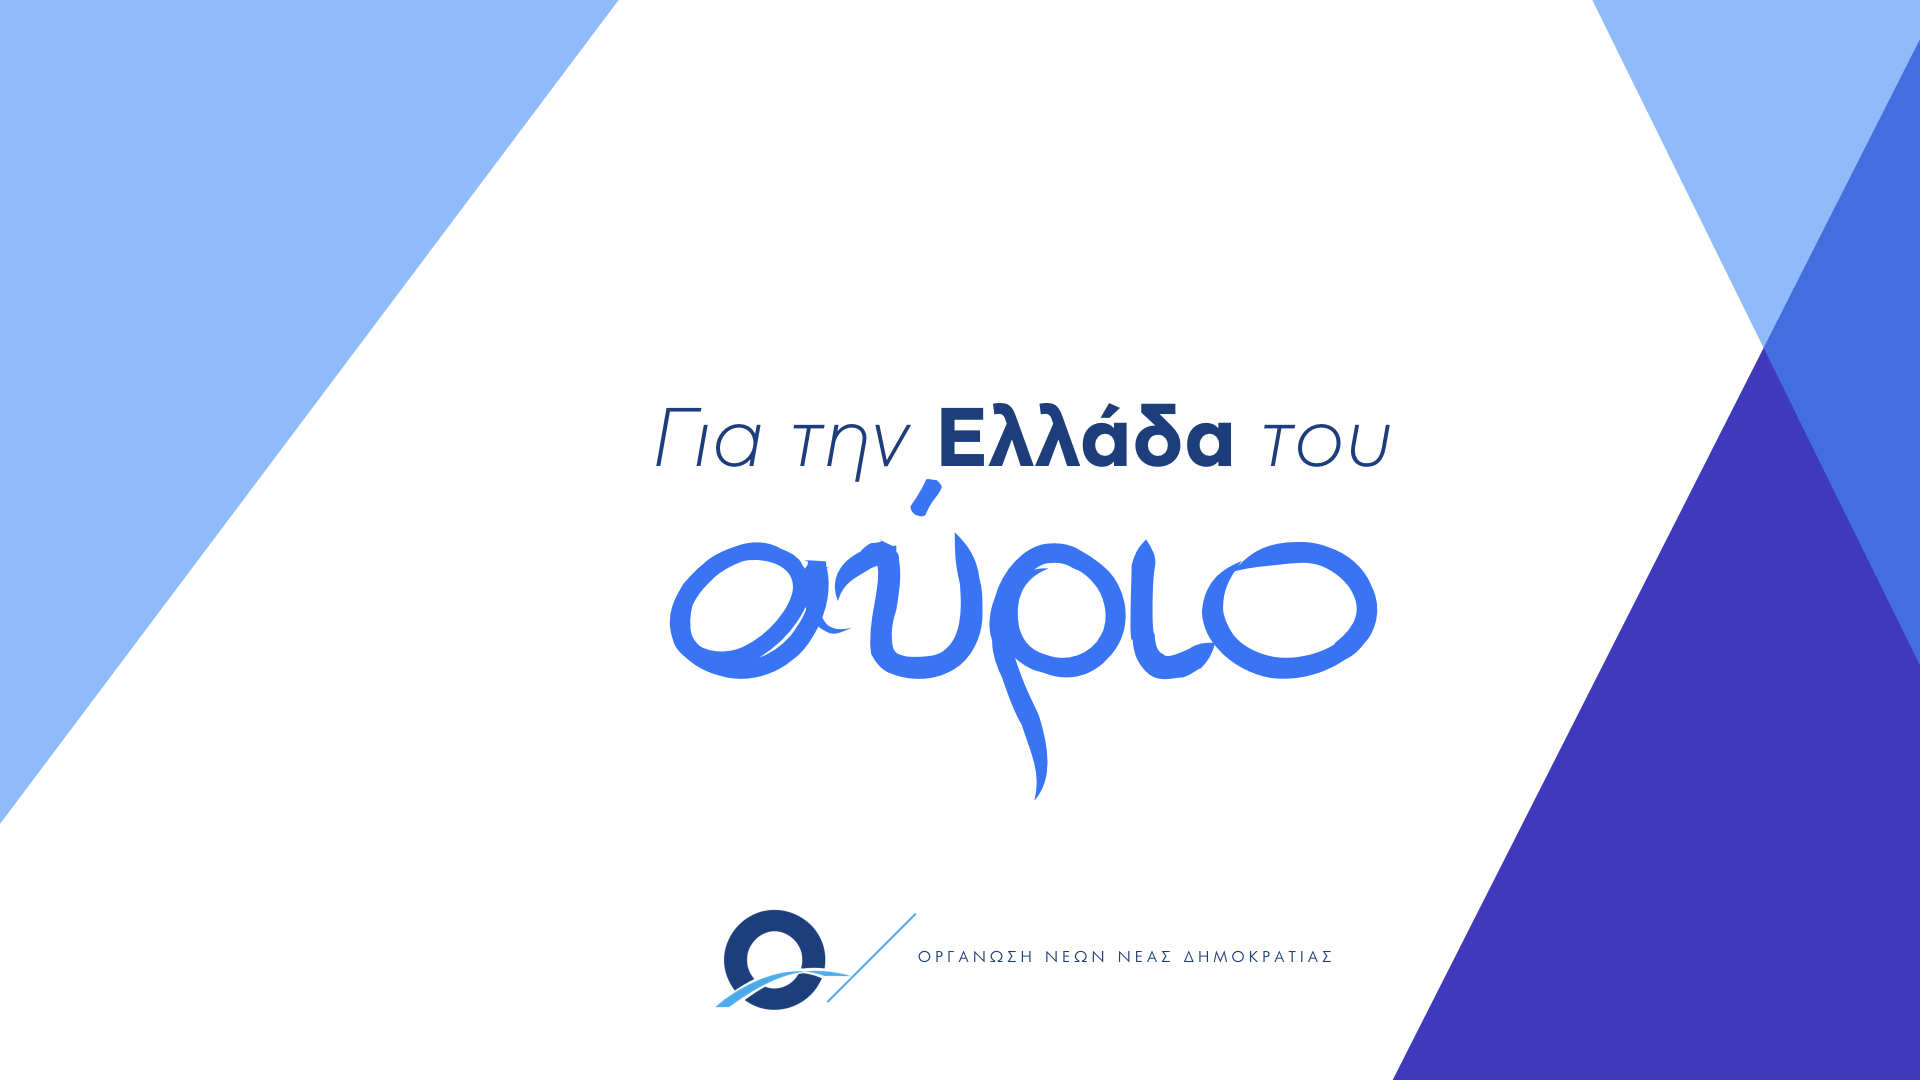 Πρόταση της ΟΝΝΕΔ για τη νέα γενιά και την Ελλάδα του αύριο